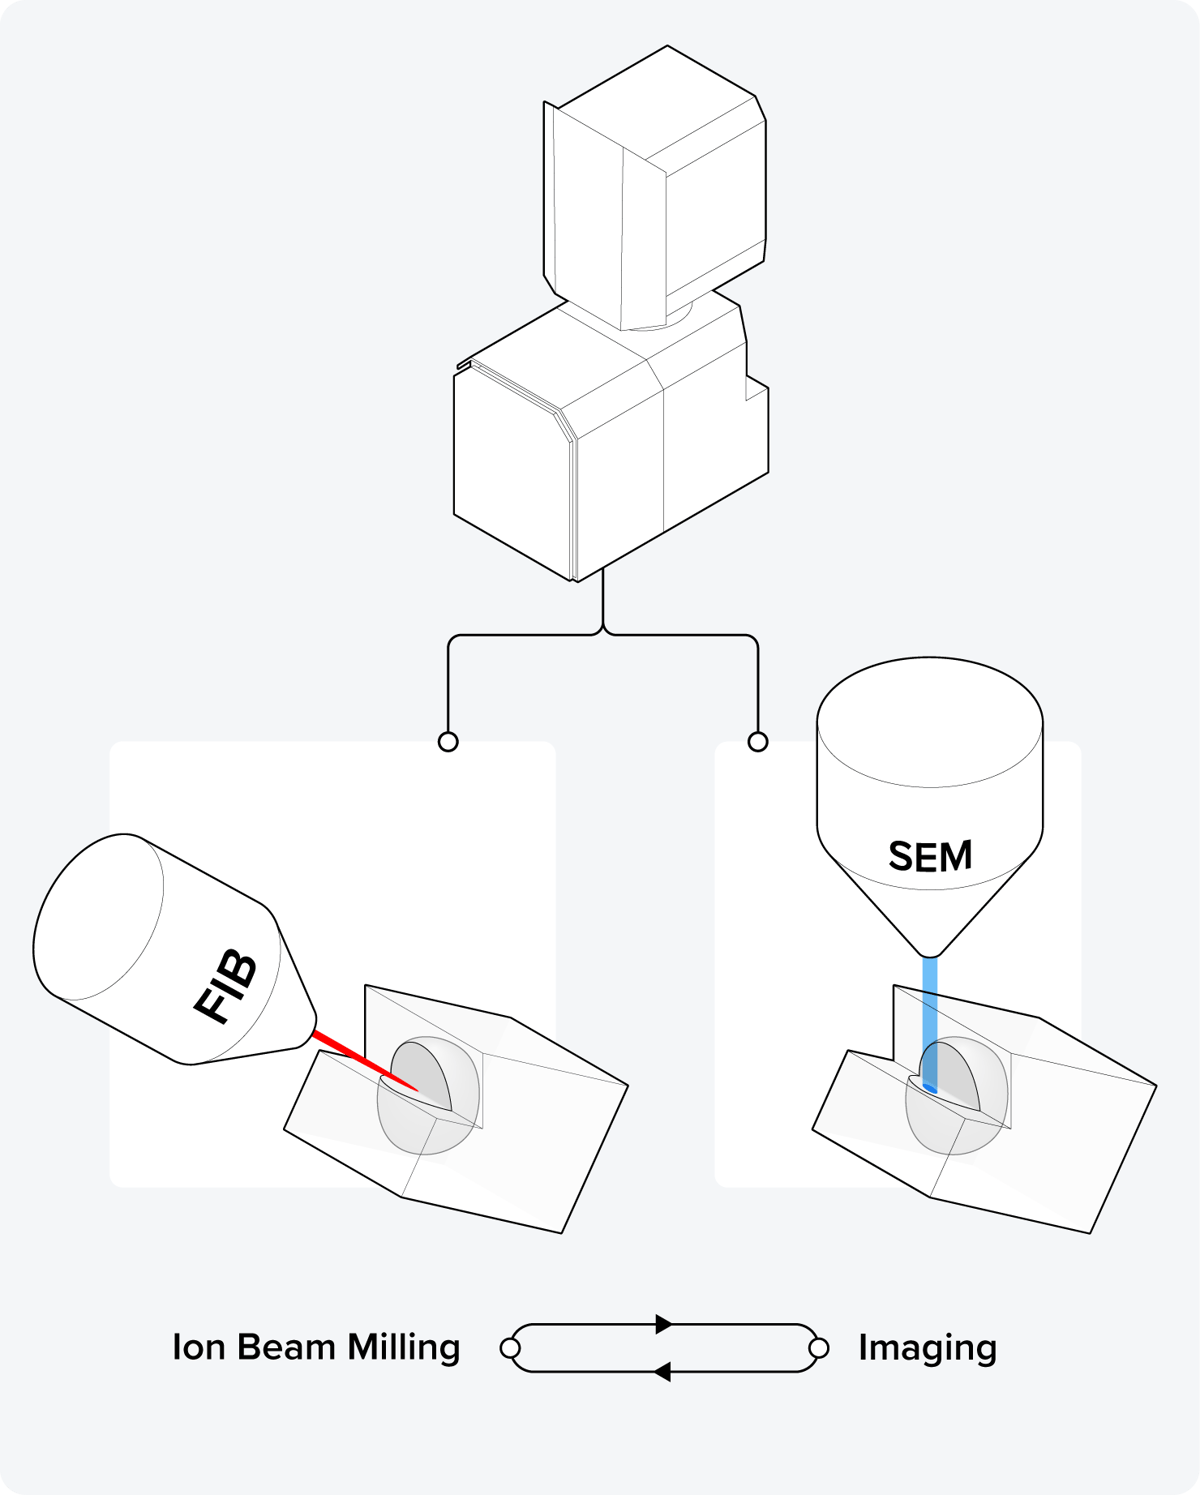 Schematic representation of the focused ion beam SEM (FIB-SEM) technique